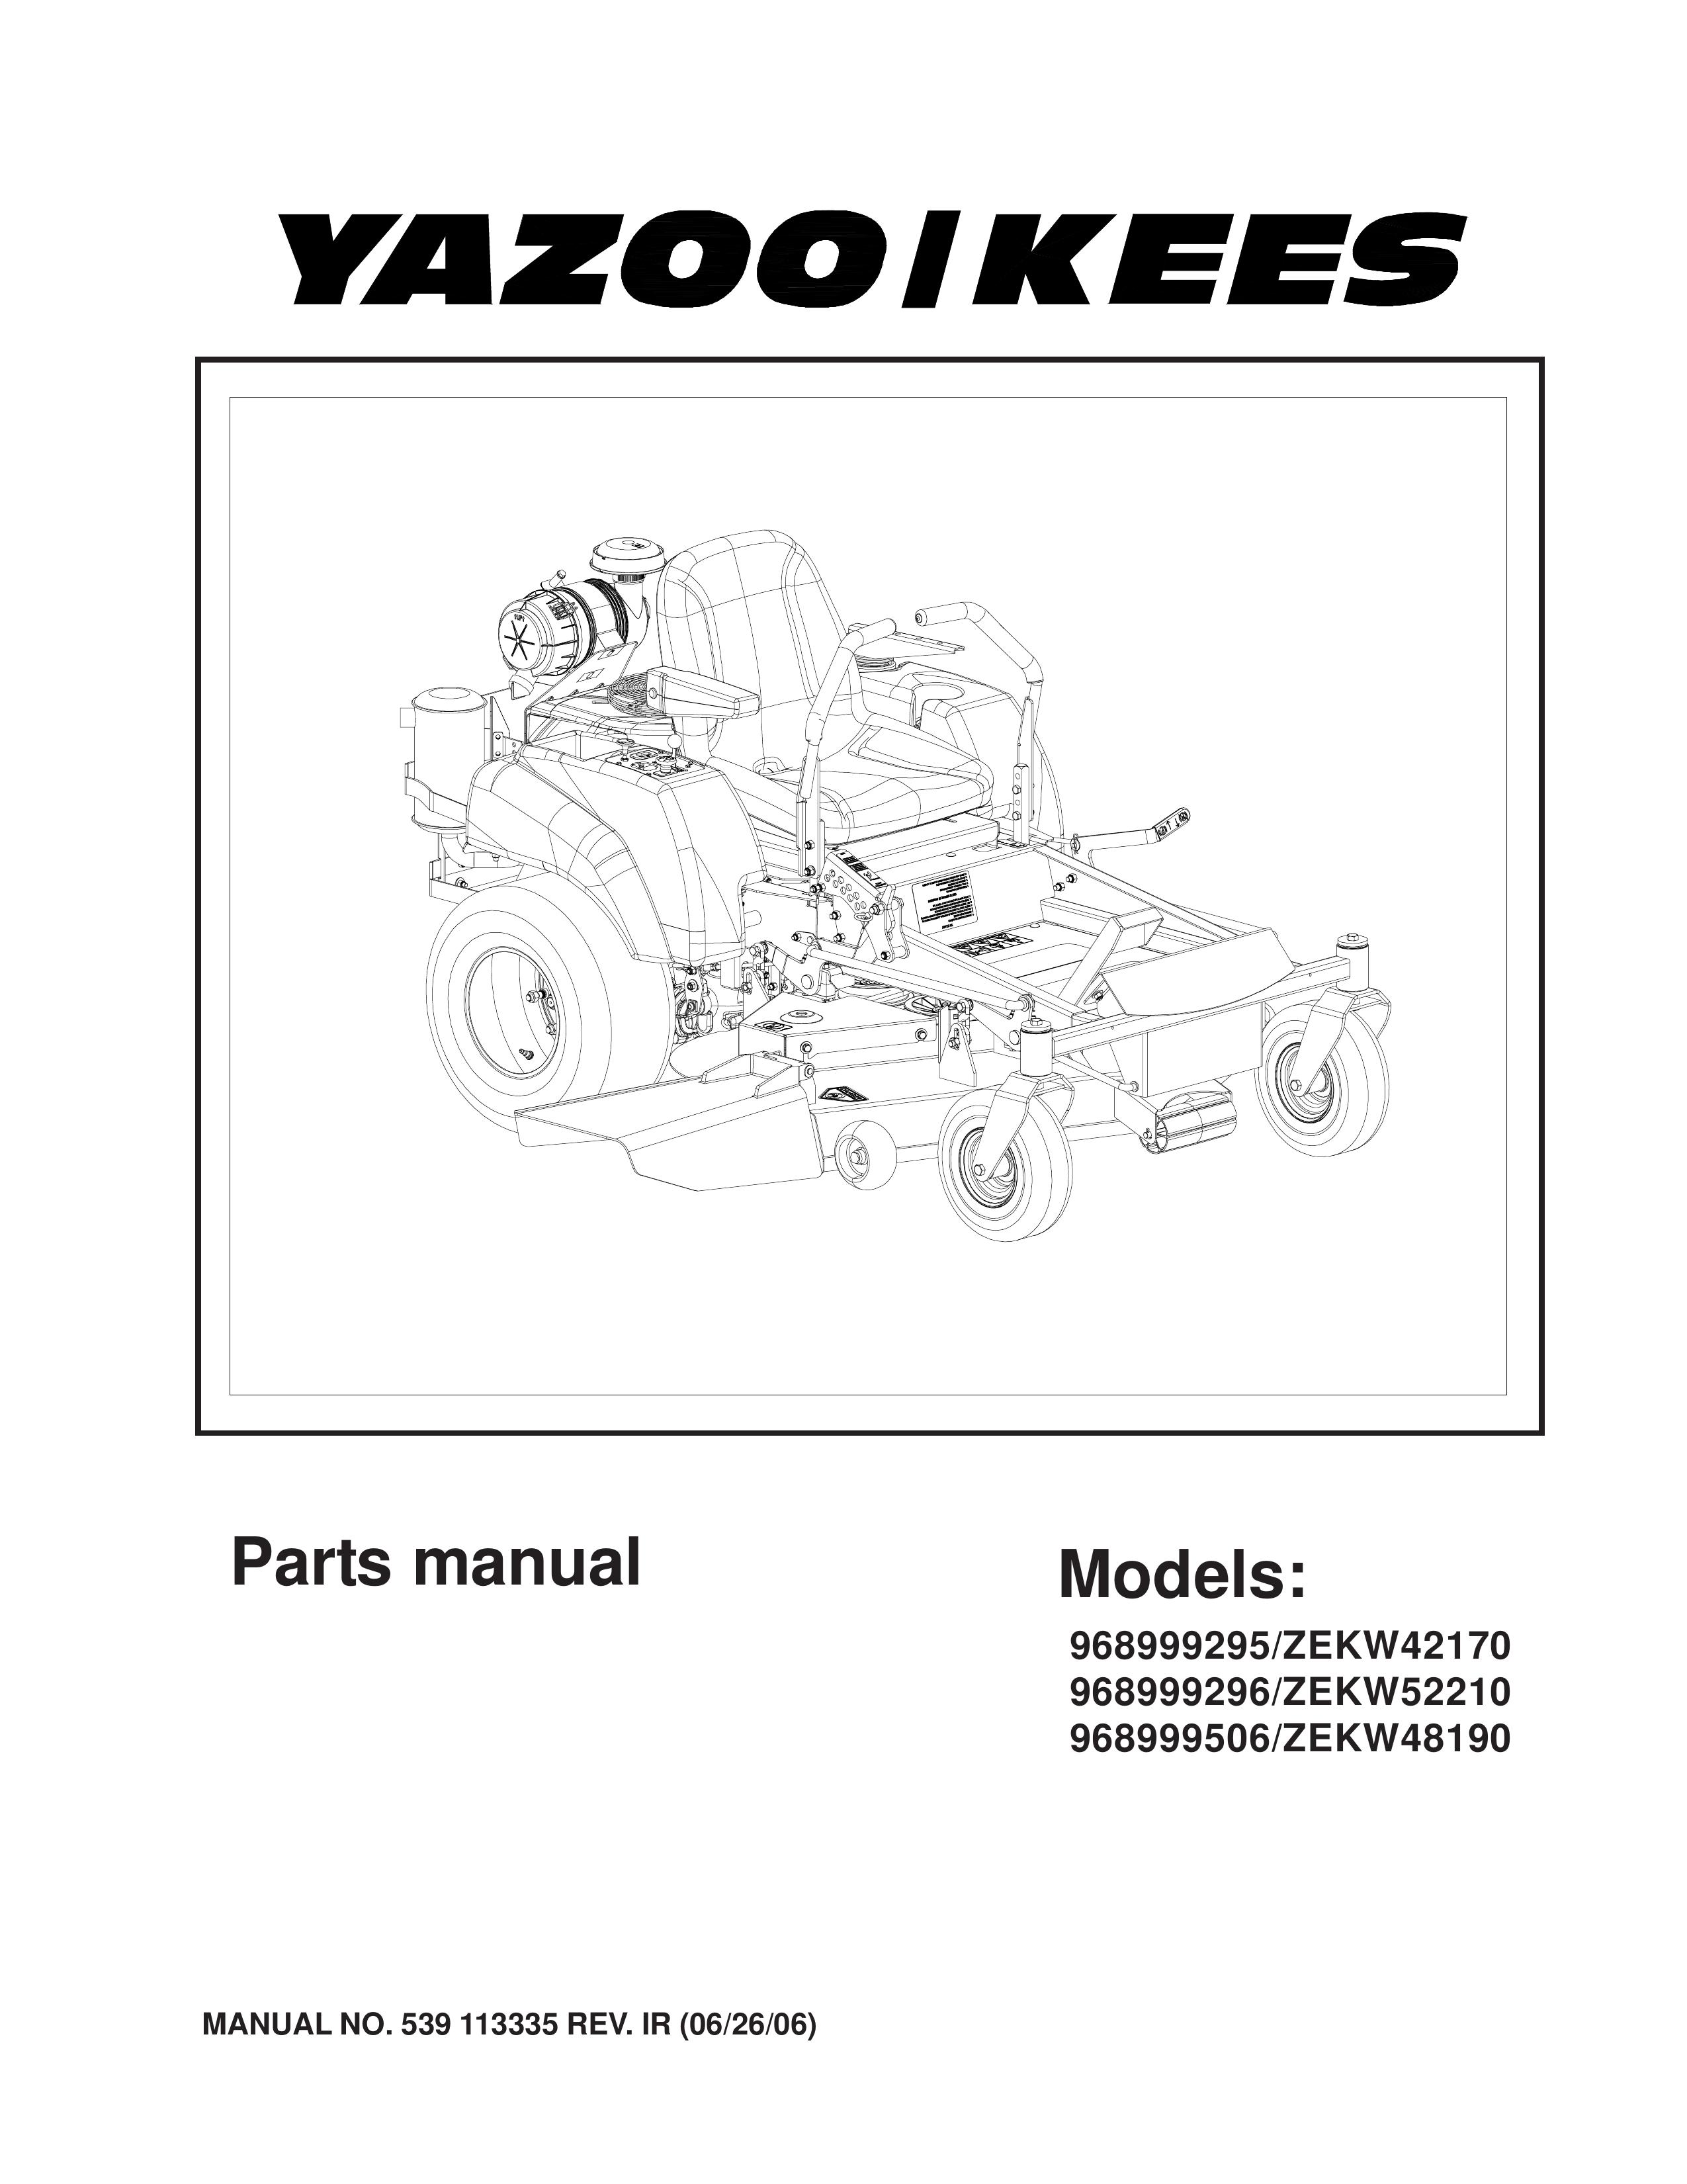 Yazoo/Kees 968999506 Lawn Mower User Manual